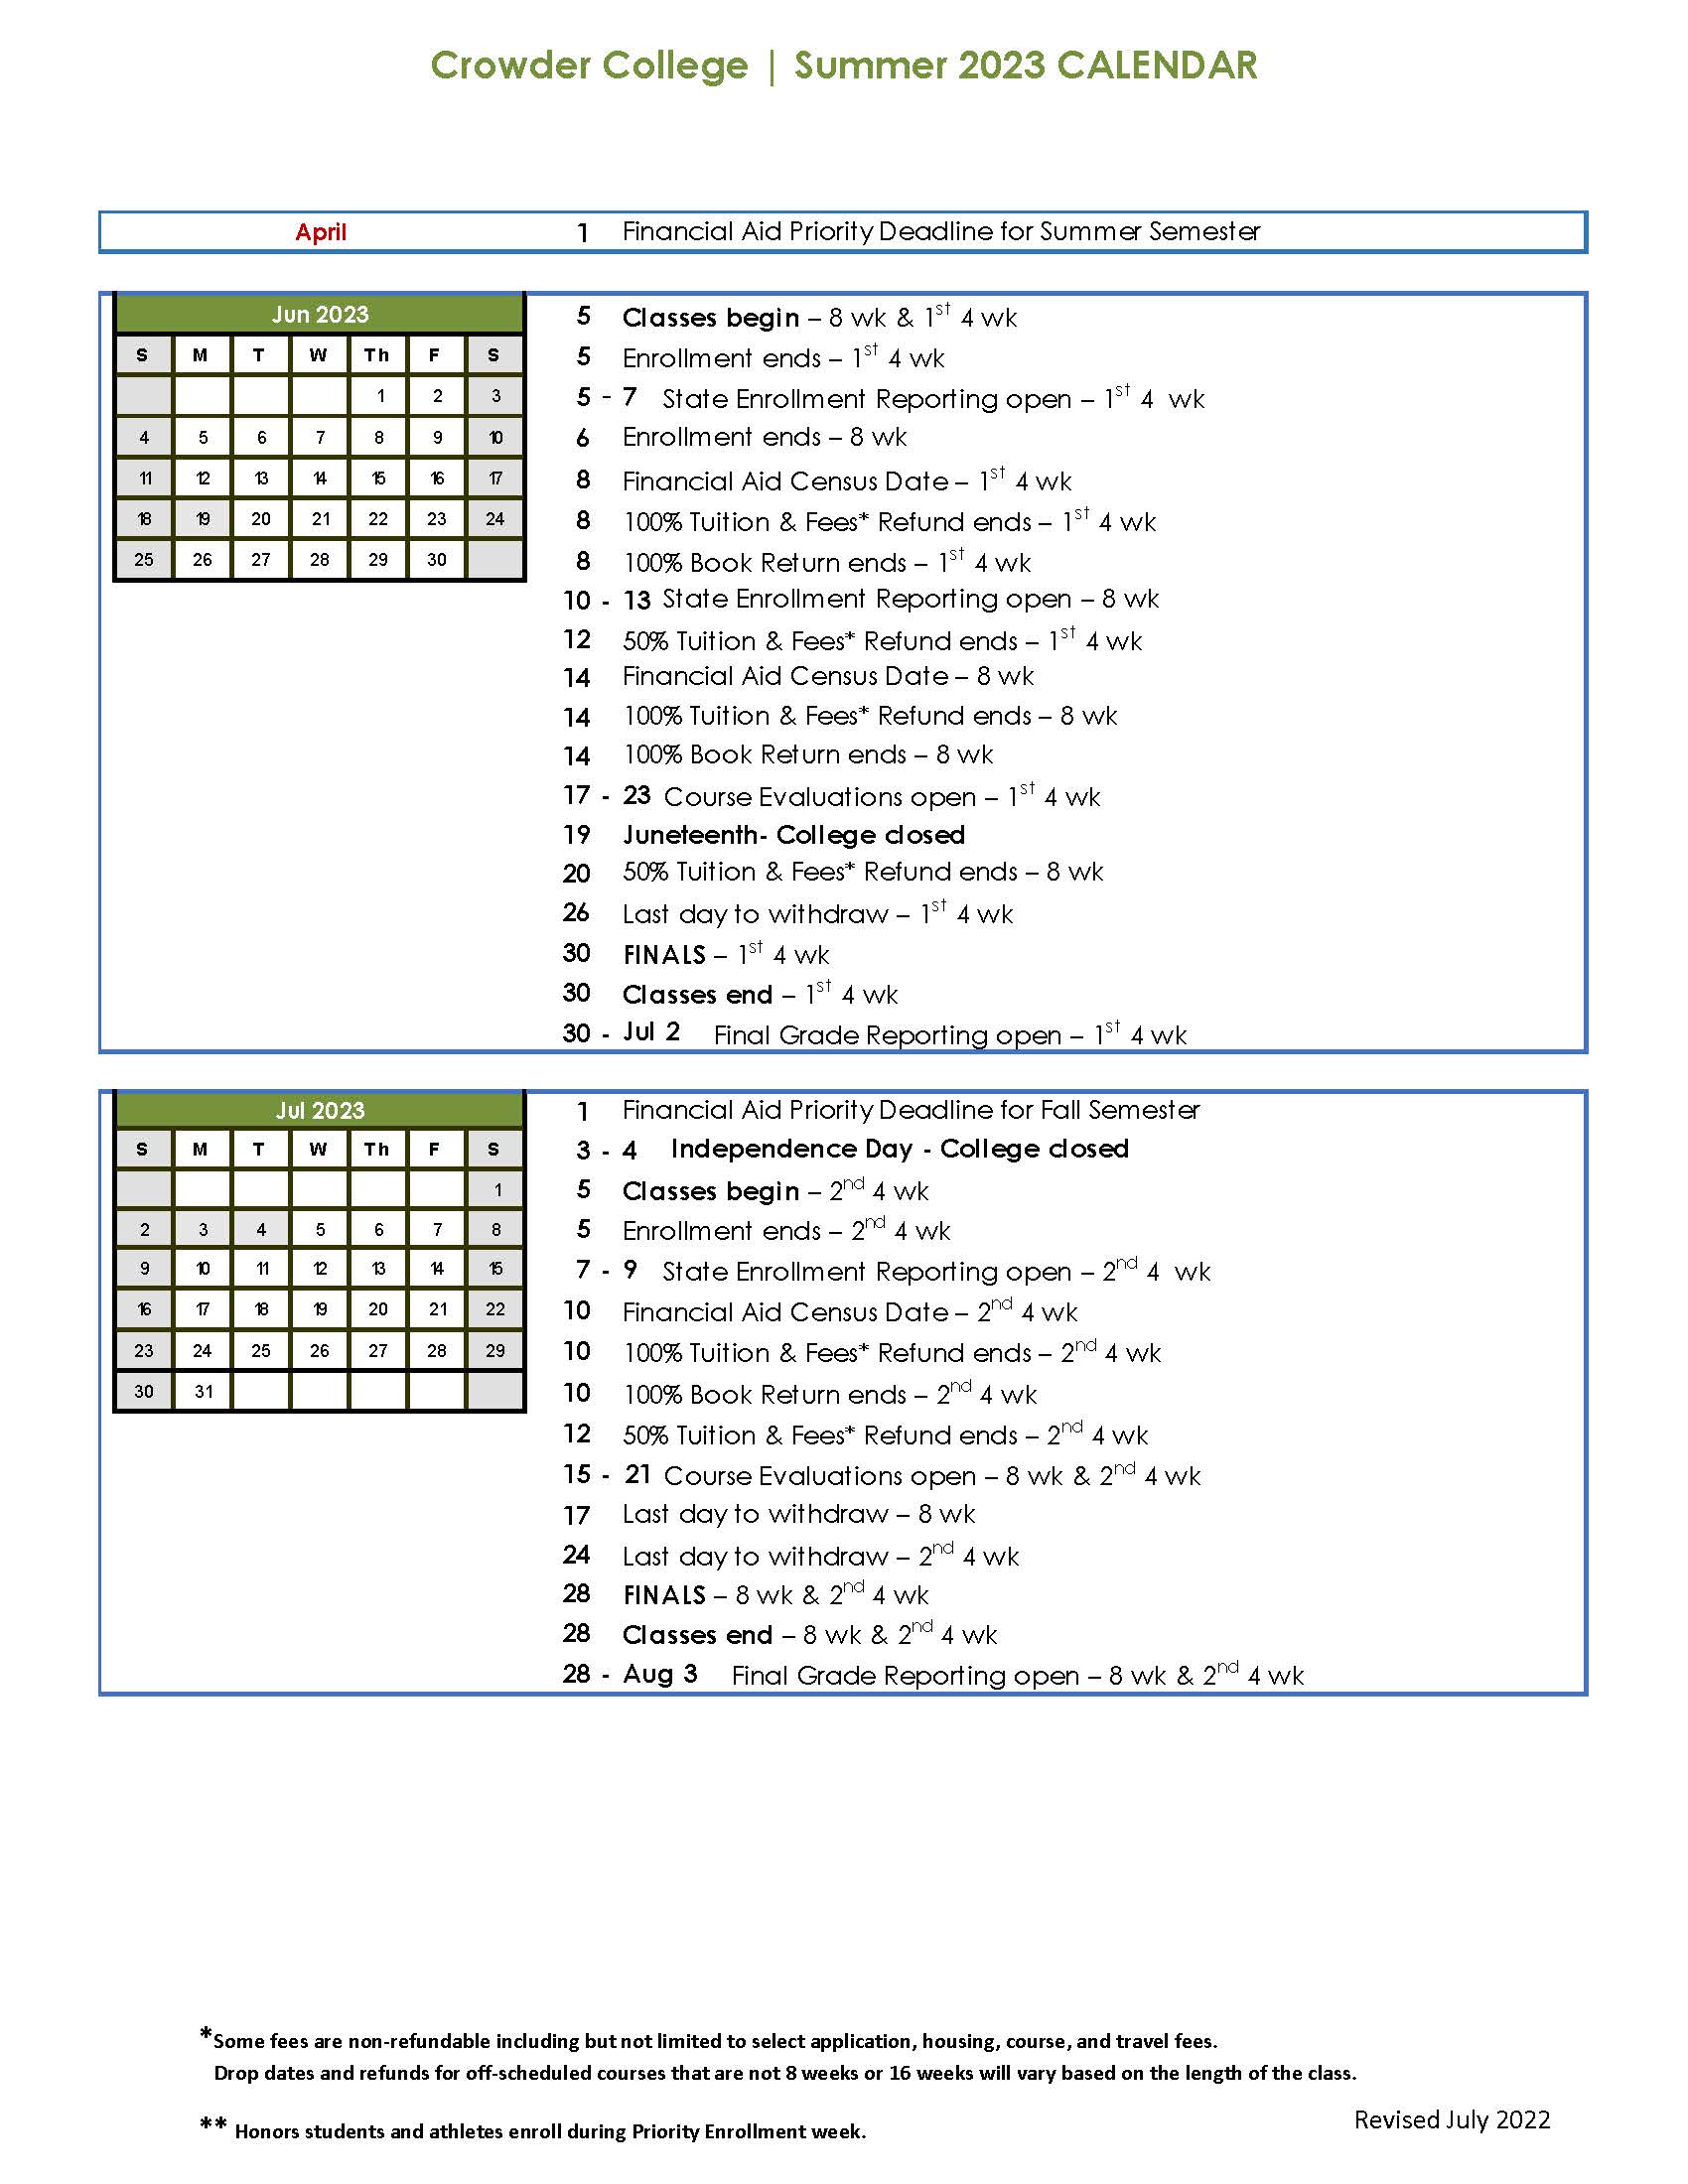 Crowder College 2023 Summer Academic Calendar